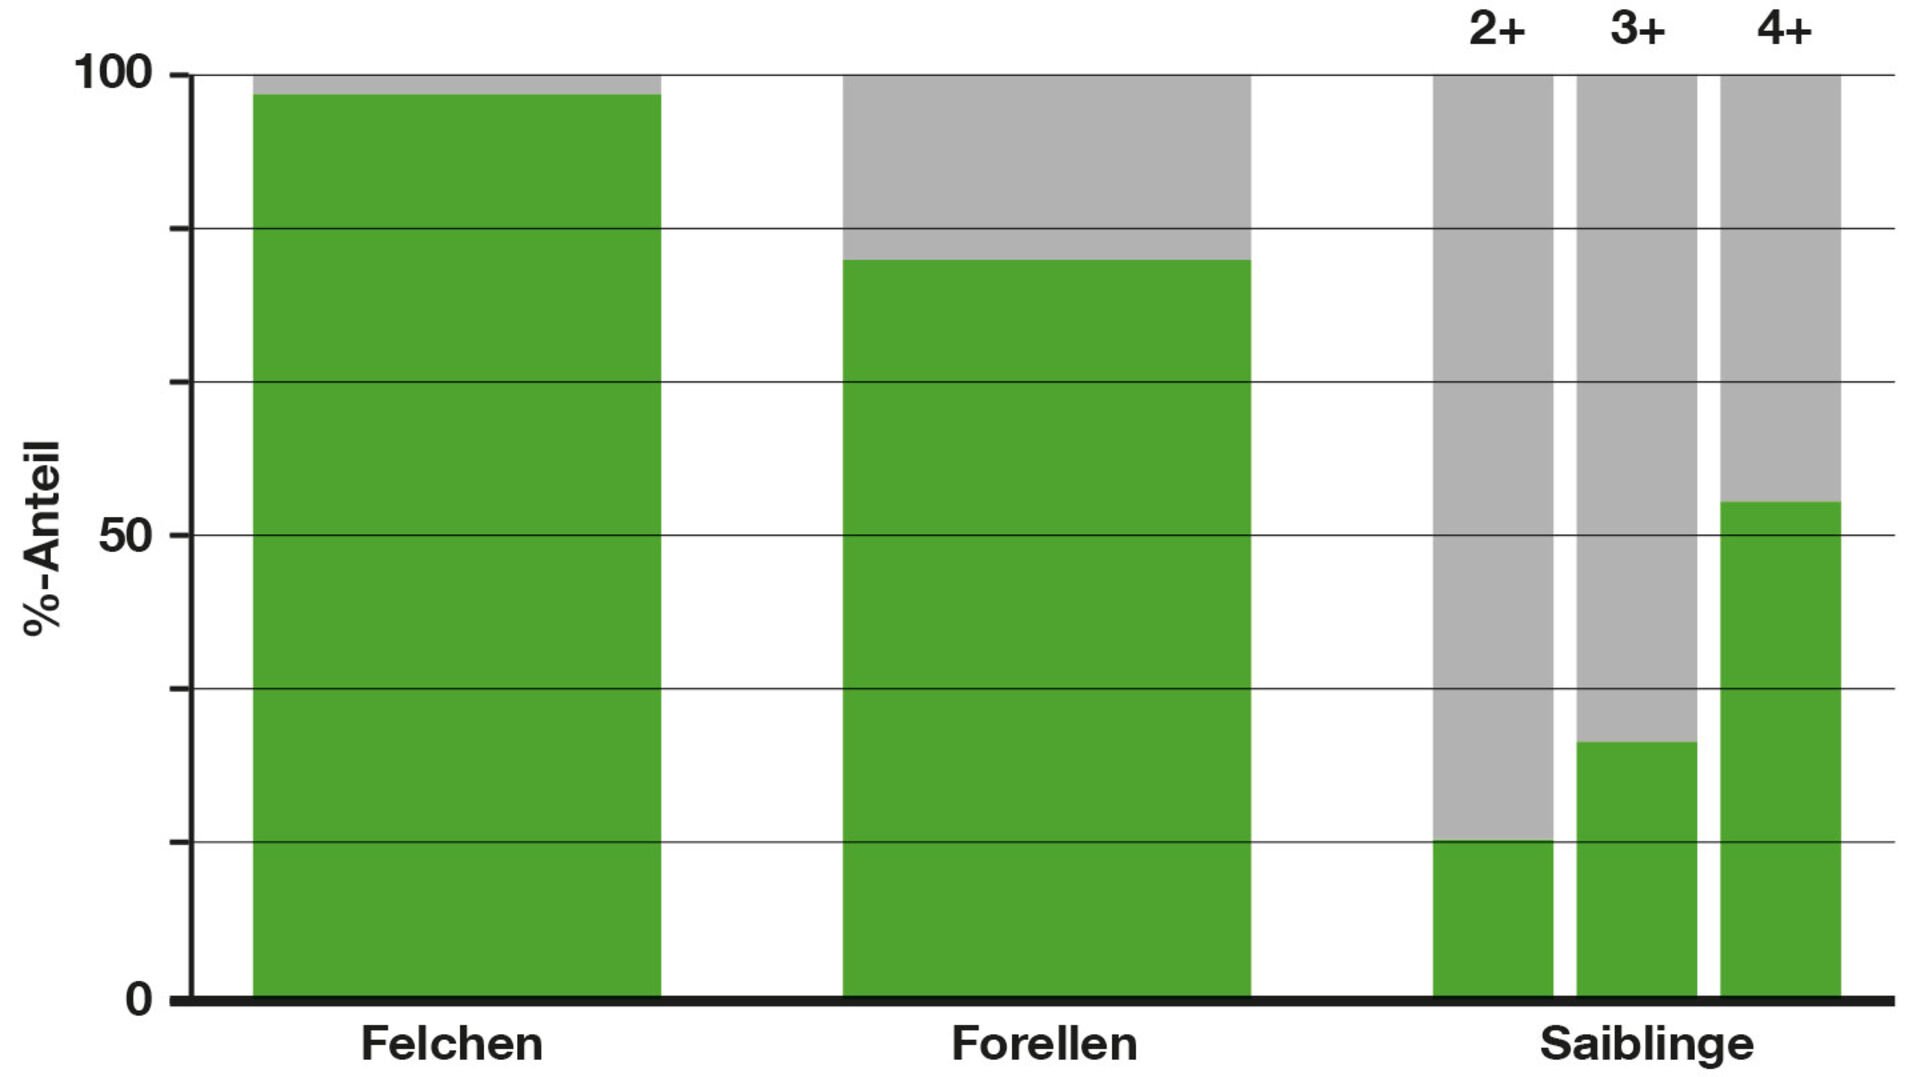  Abbildung 3: Prozentualer Anteil von naturverlaichten (grün) und aus dem Besatz stammenden lachsartigen Fischen (grau) im Genfersee. Die Seesaiblinge wurden in drei Alterklasse (2+, 3+ und 4+) unterteilt. Die Besatzfische haben eine höhere Sterblichkeit als ihre aus der natürlichen Fortpflanzung stammenden Artgenossen, deshalb nimmt der Anteil Seesaiblinge aus der Naturverlaichung über die Jahre zu. (Daten: Internationale Kommission der Genfersee-Fischerei)  